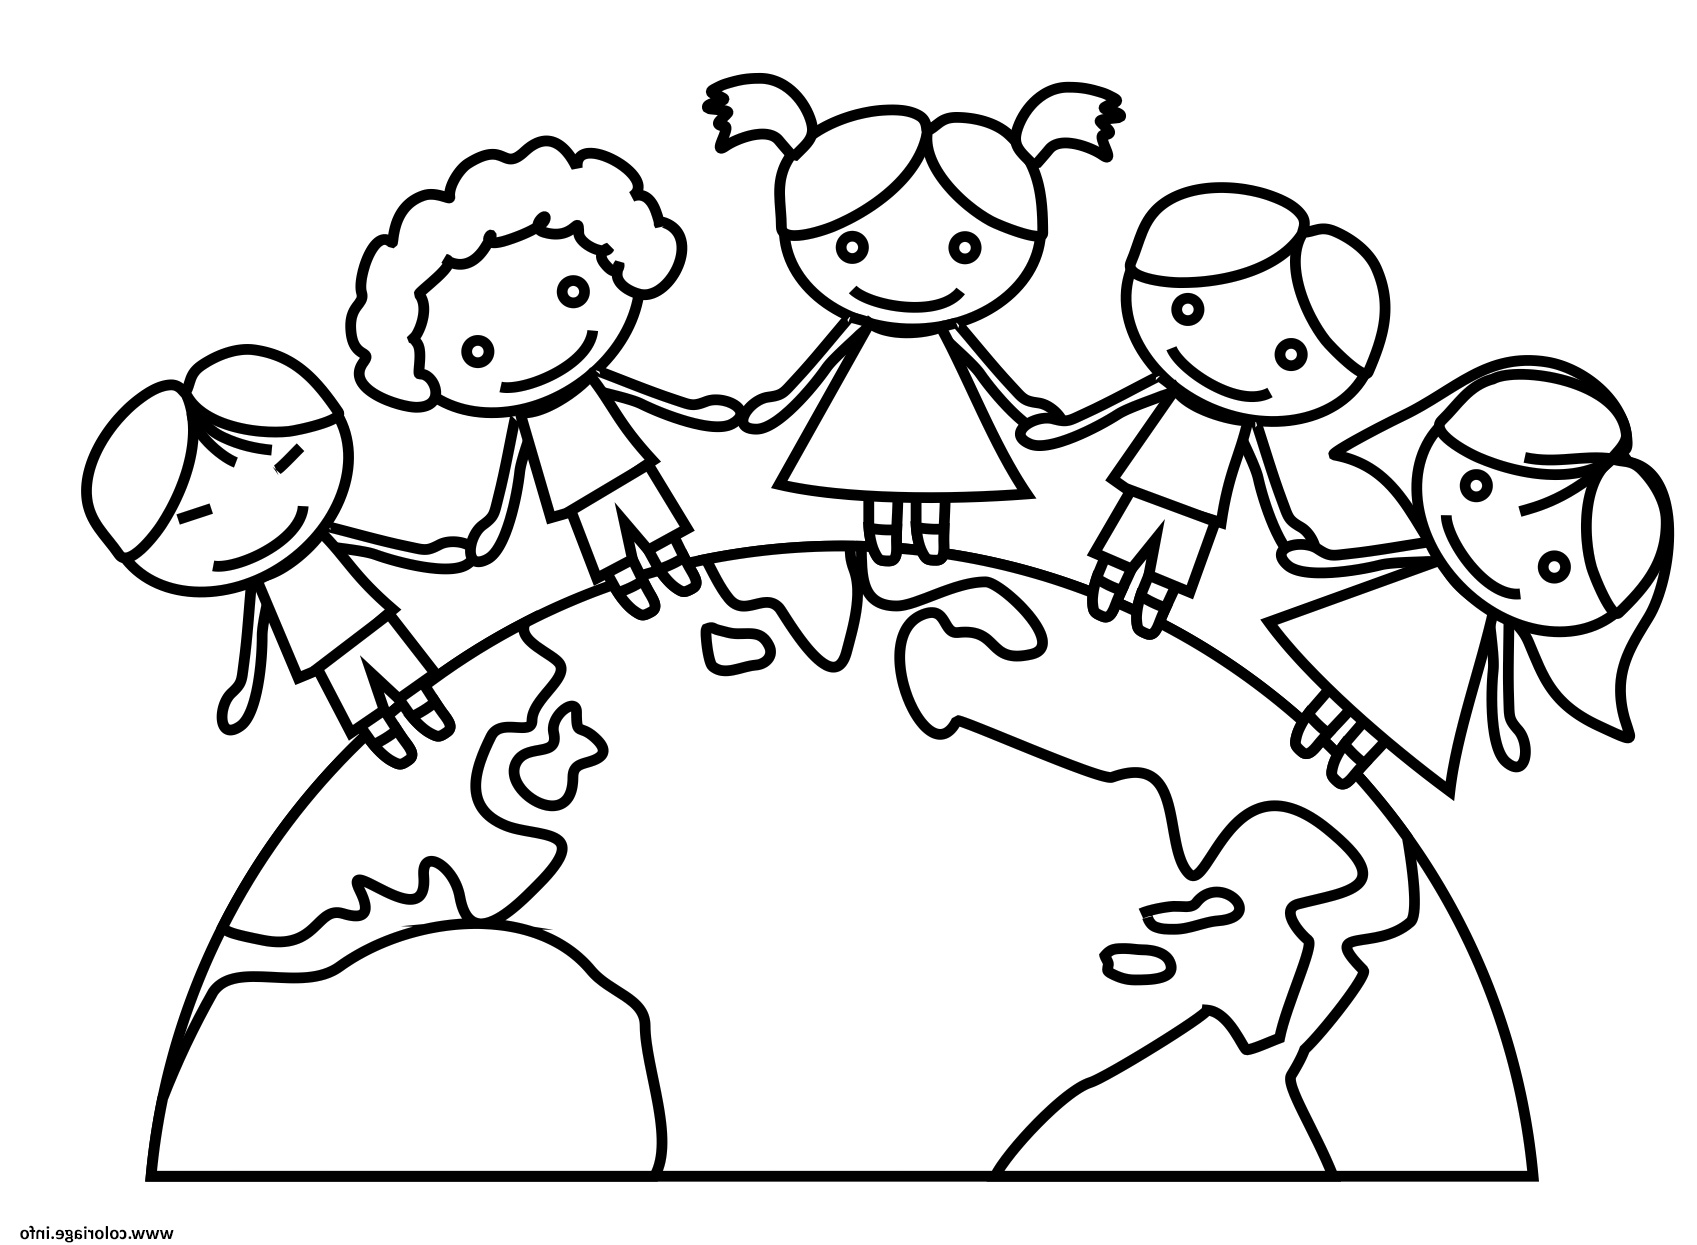 jour de la terre maternelle ecole enfants coloriage dessin